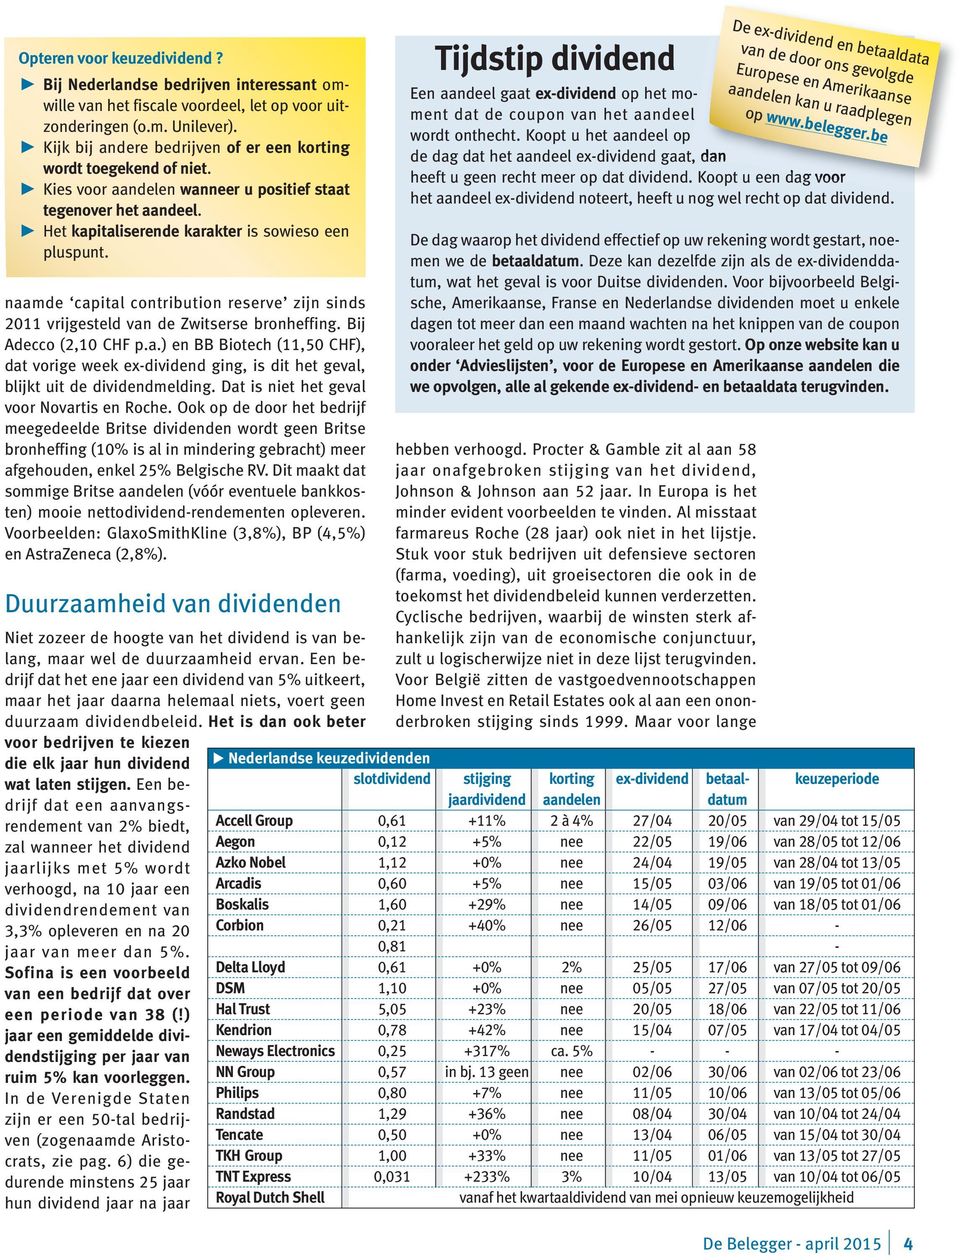 naamde capital contribution reserve zijn sinds 2011 vrijgesteld van de Zwitserse bronheffing. Bij Adecco (2,10 CHF p.a.) en BB Biotech (11,50 CHF), dat vorige week ex-dividend ging, is dit het geval, blijkt uit de dividendmelding.